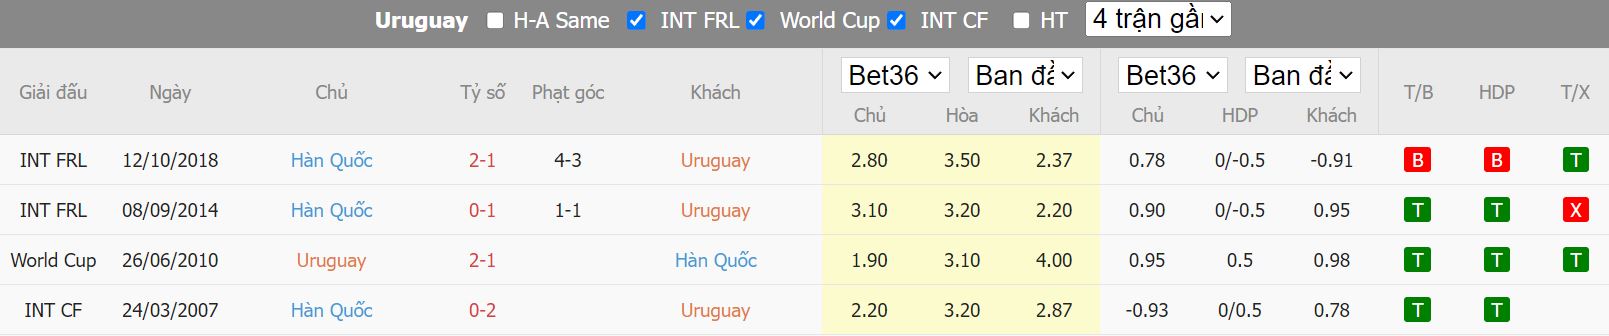 Nhận định Uruguay vs Hàn Quốc, 20h00 ngay 24/11, World Cup 2022 - Ảnh 3